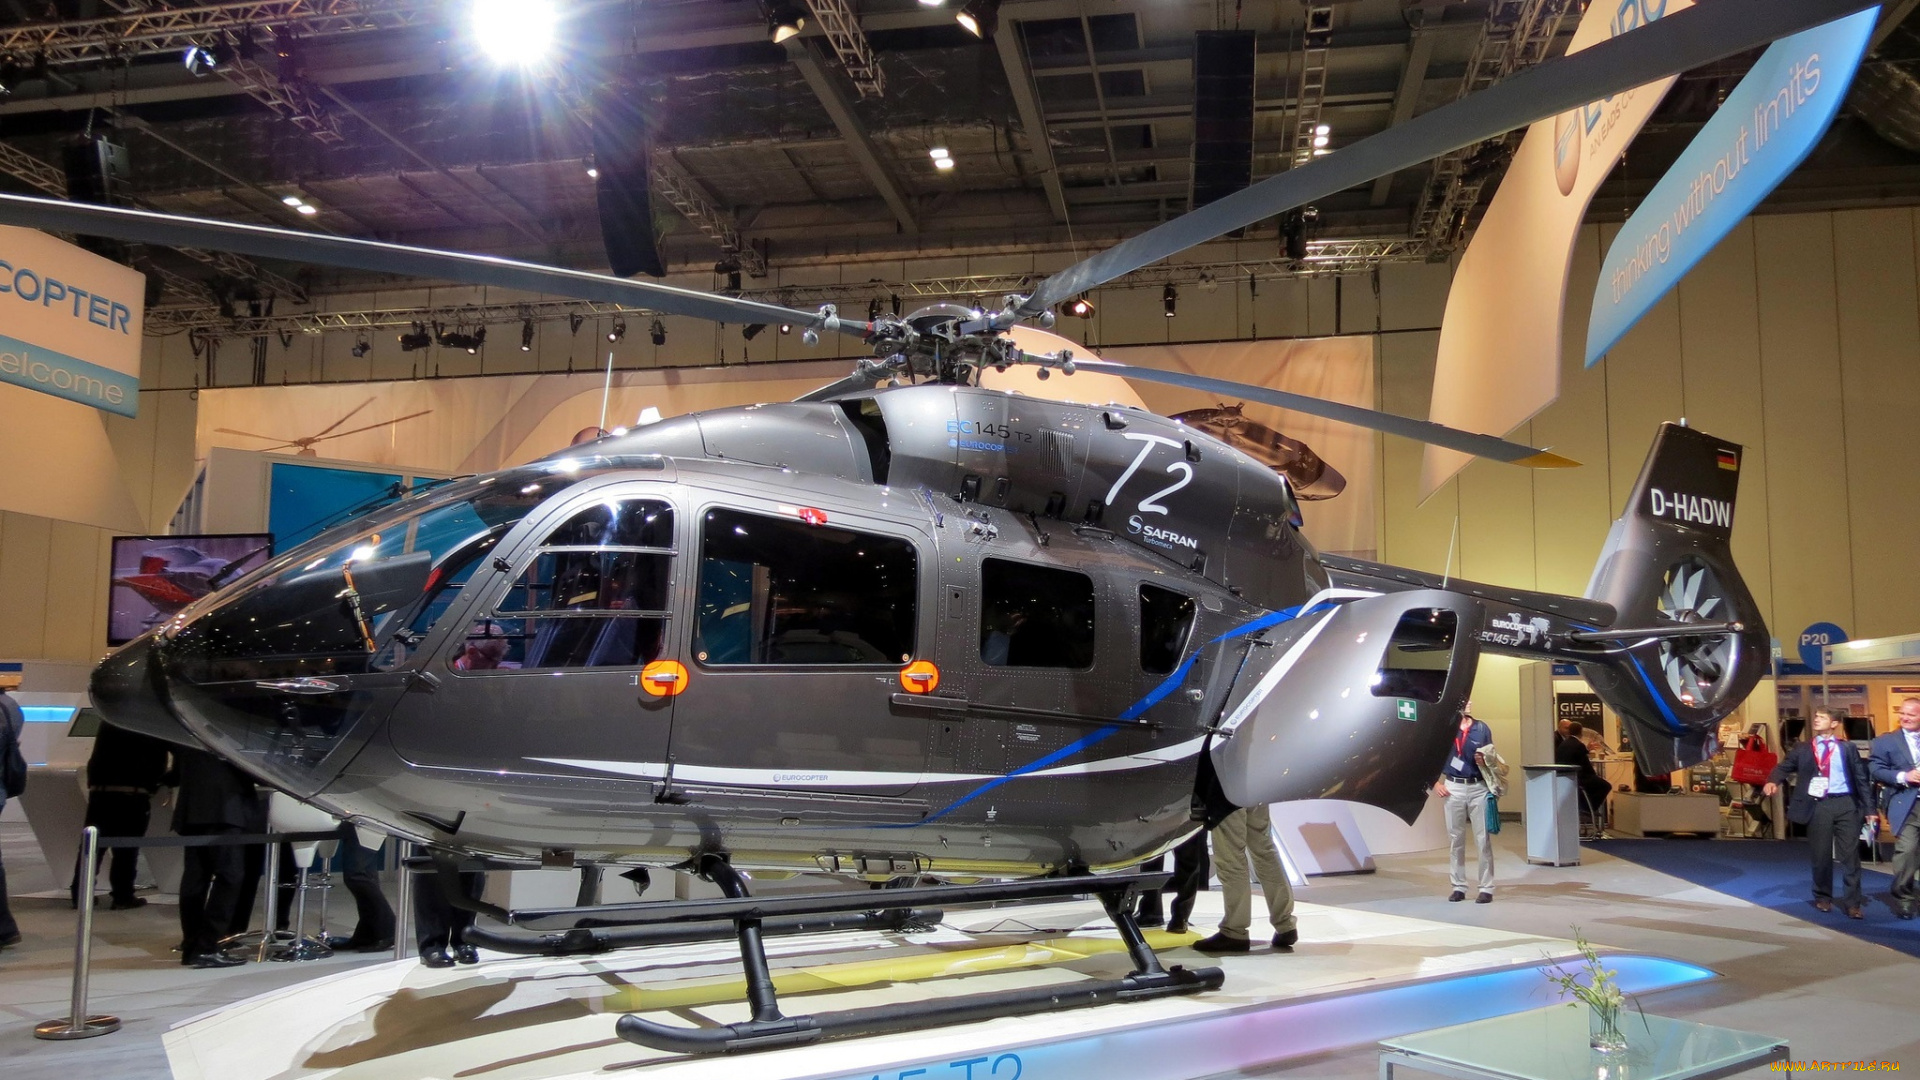 eurocopter, ec145t2, авиация, вертолёты, экспонат, еврокоптер, вертолет, выставка, авиатехника